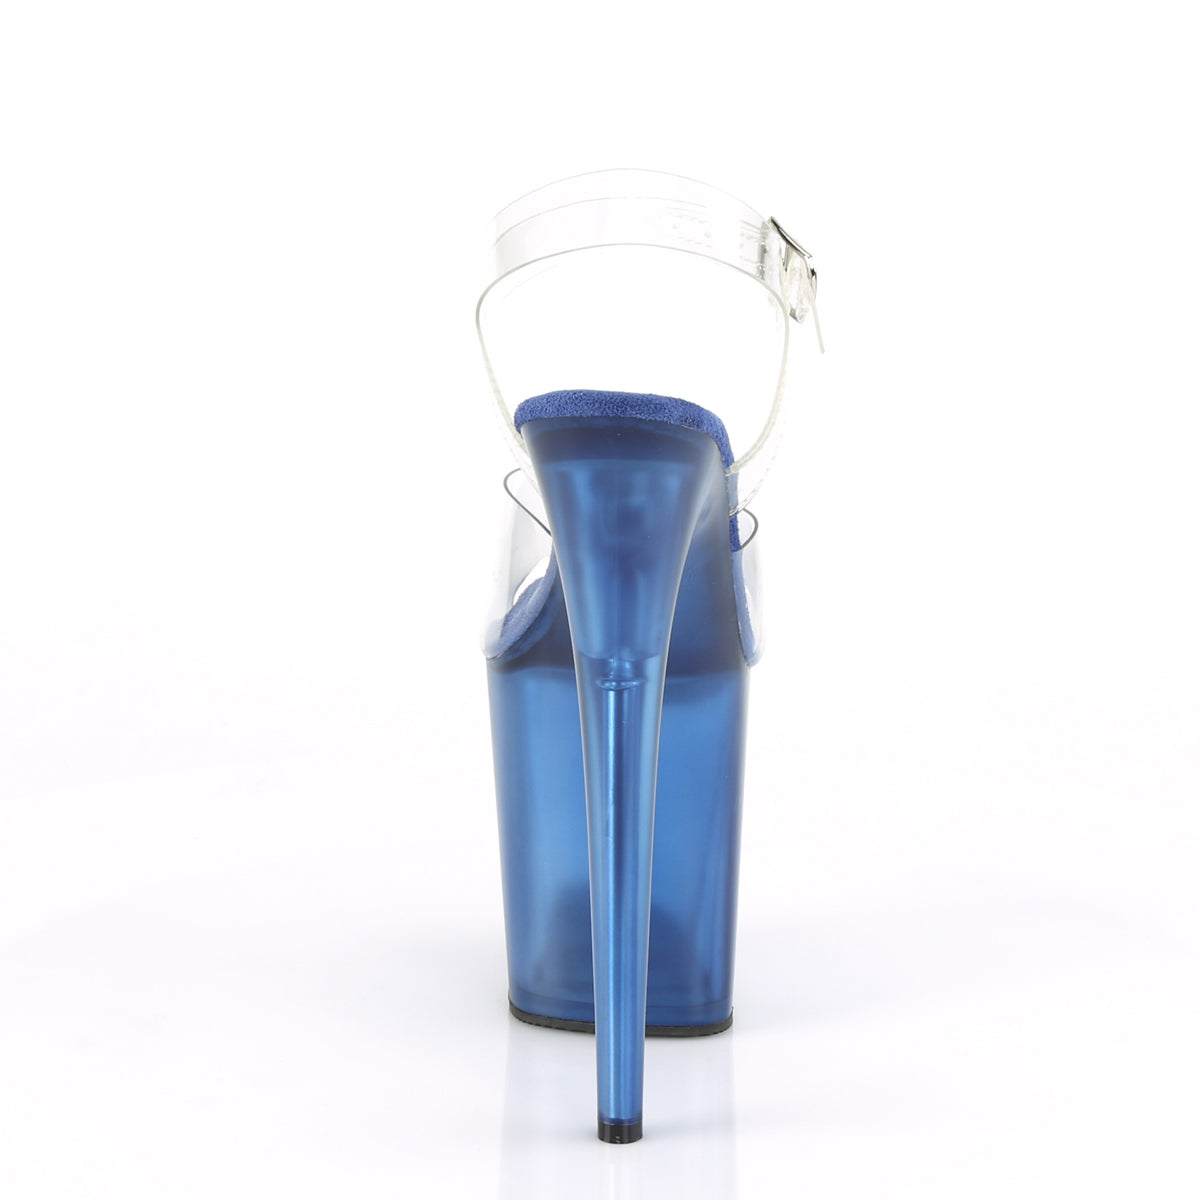 Pleaser Sandales pour femmes FLAMINGO-808t CLR / Bleu teinté